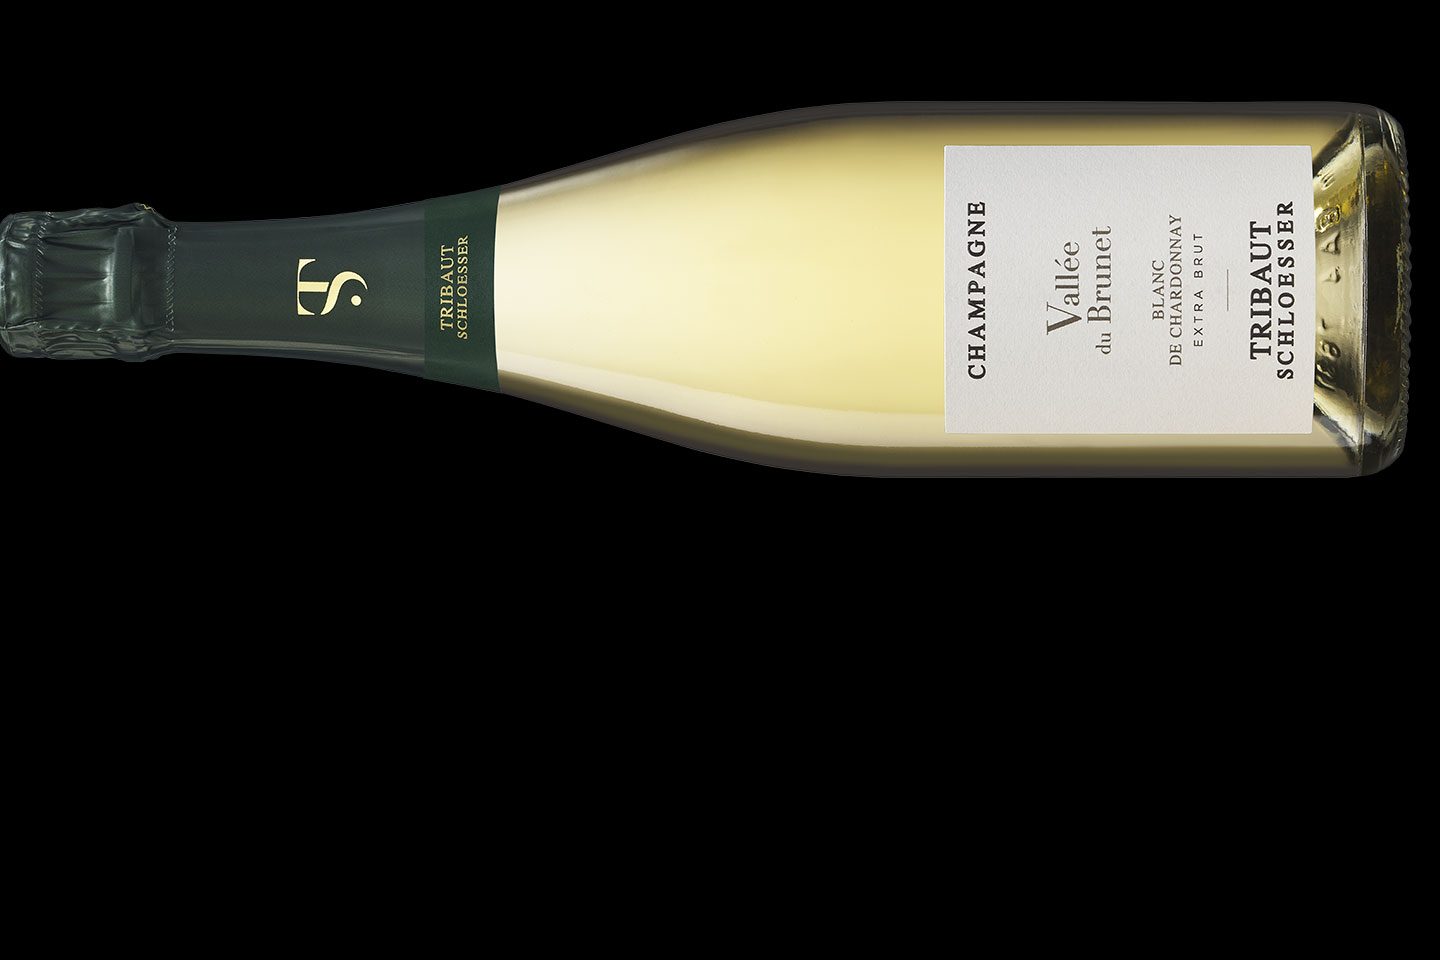 Champagne Tribaut Schloesser Blanc de Chardonnay